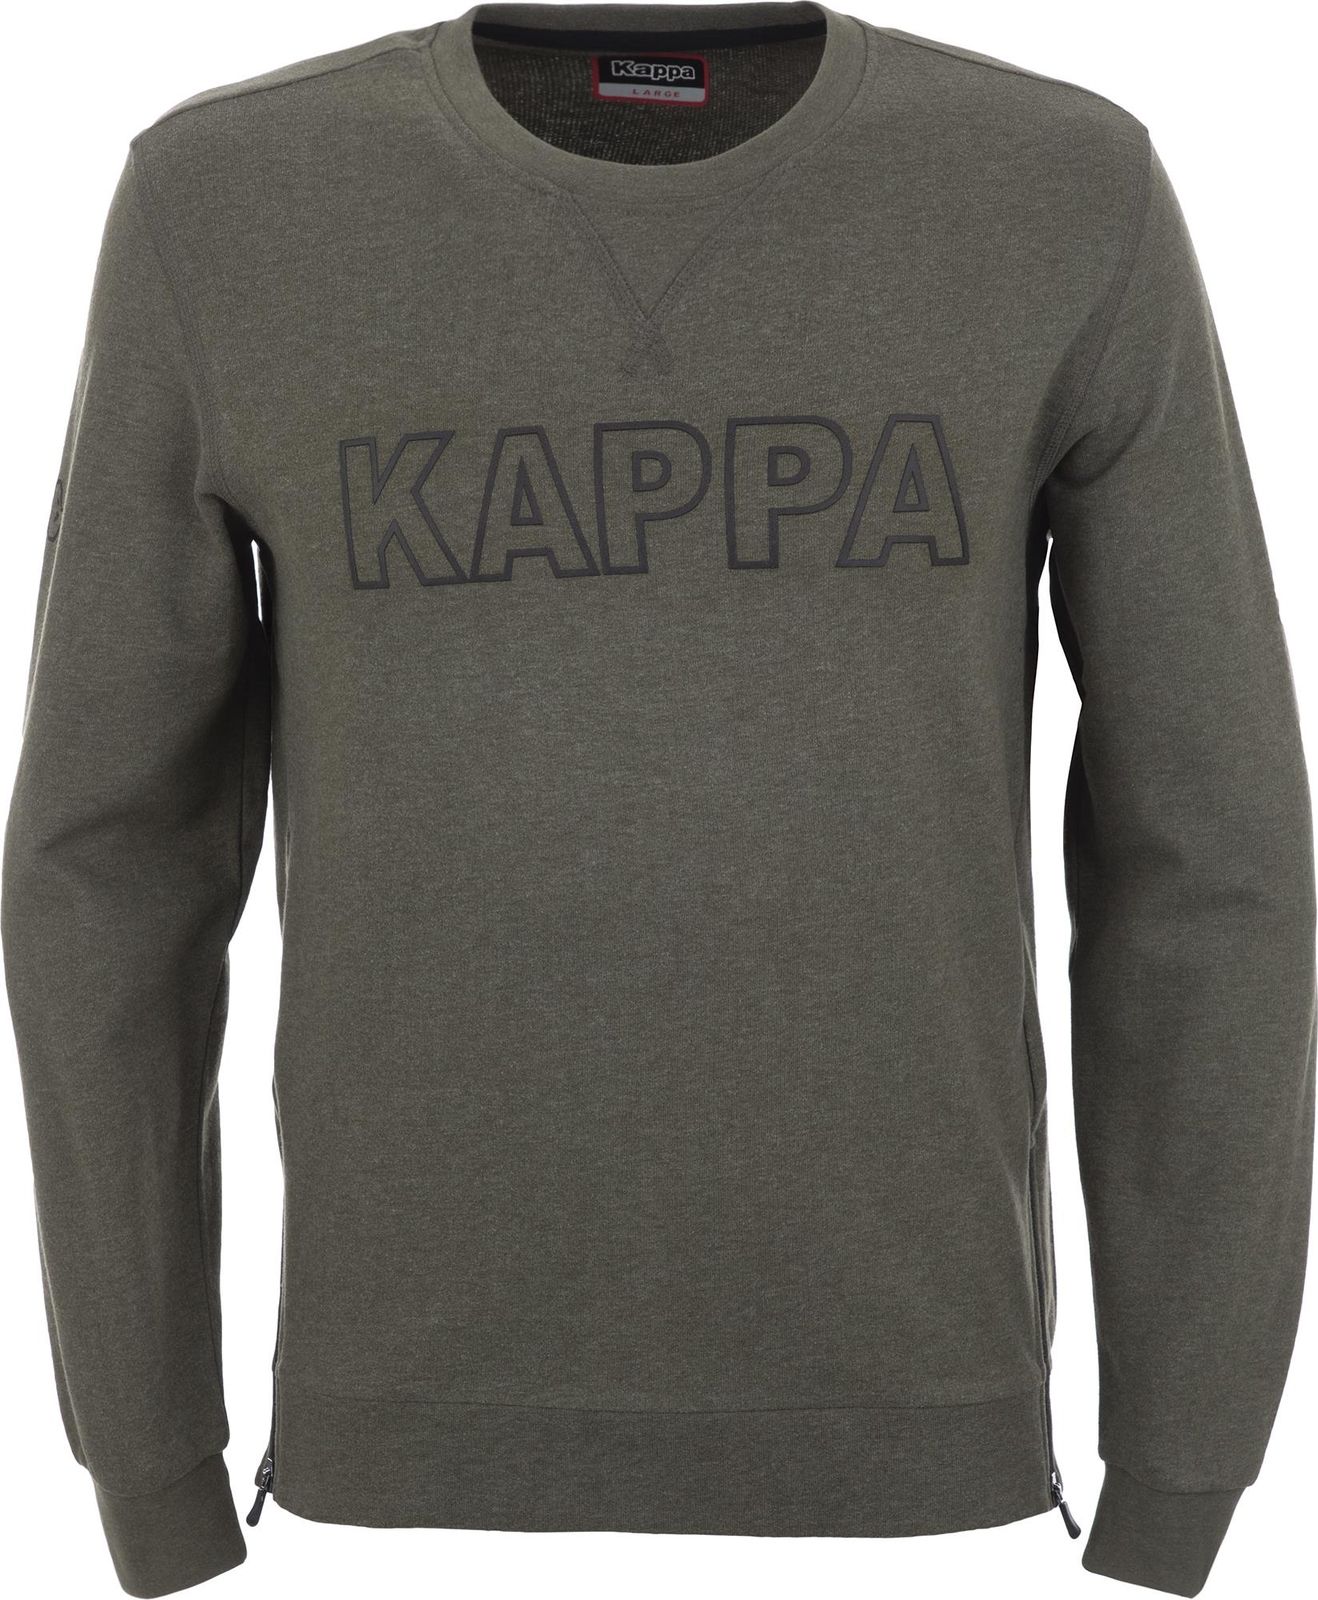   Kappa Men's Jumper, : -. 304IDL0-5U.  L (50)